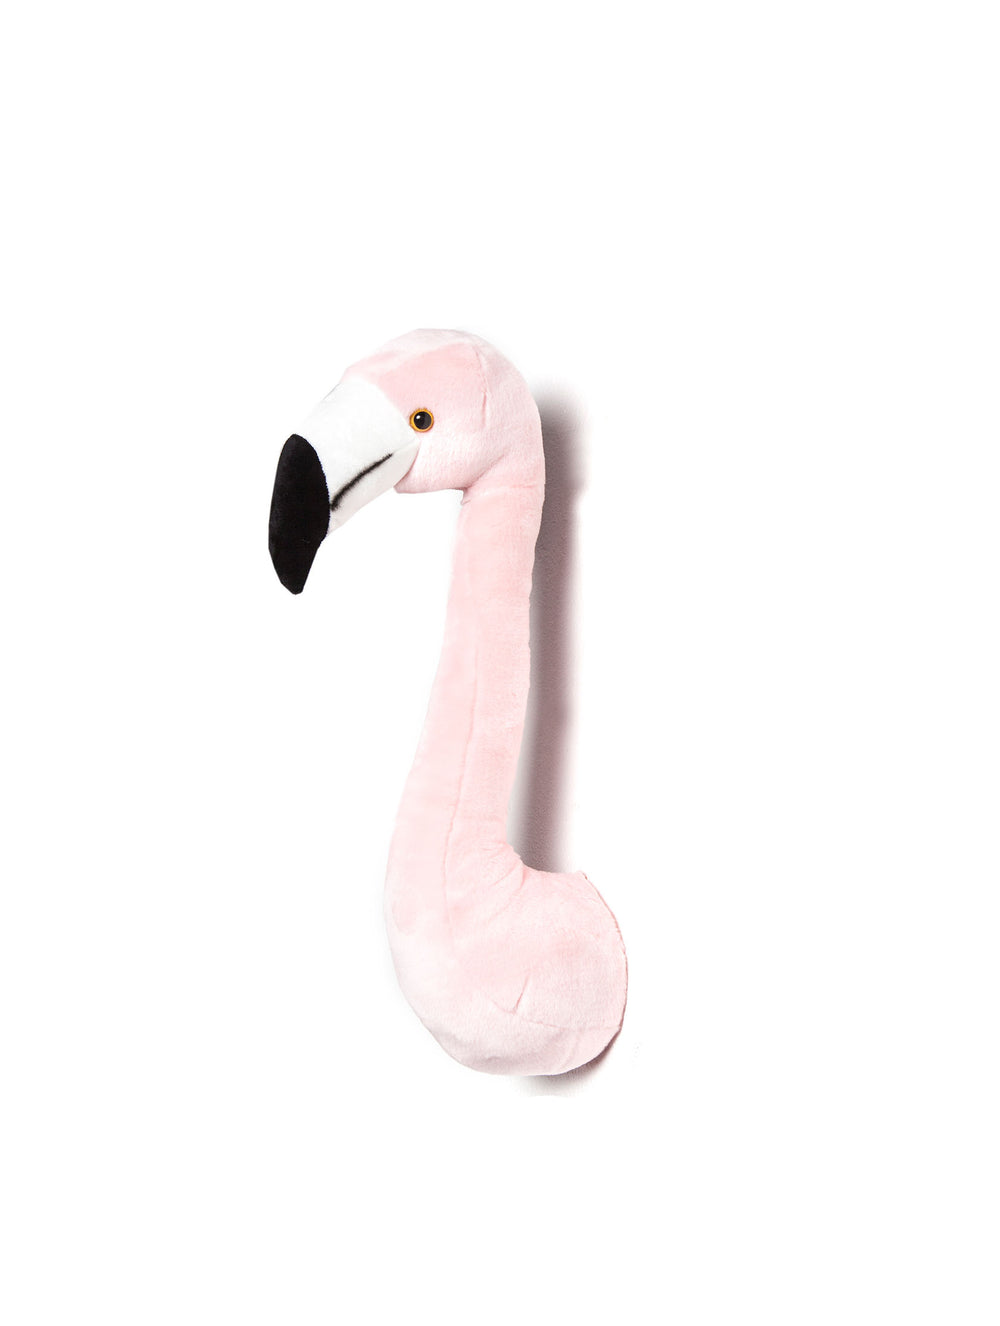 Sophia de flamingo